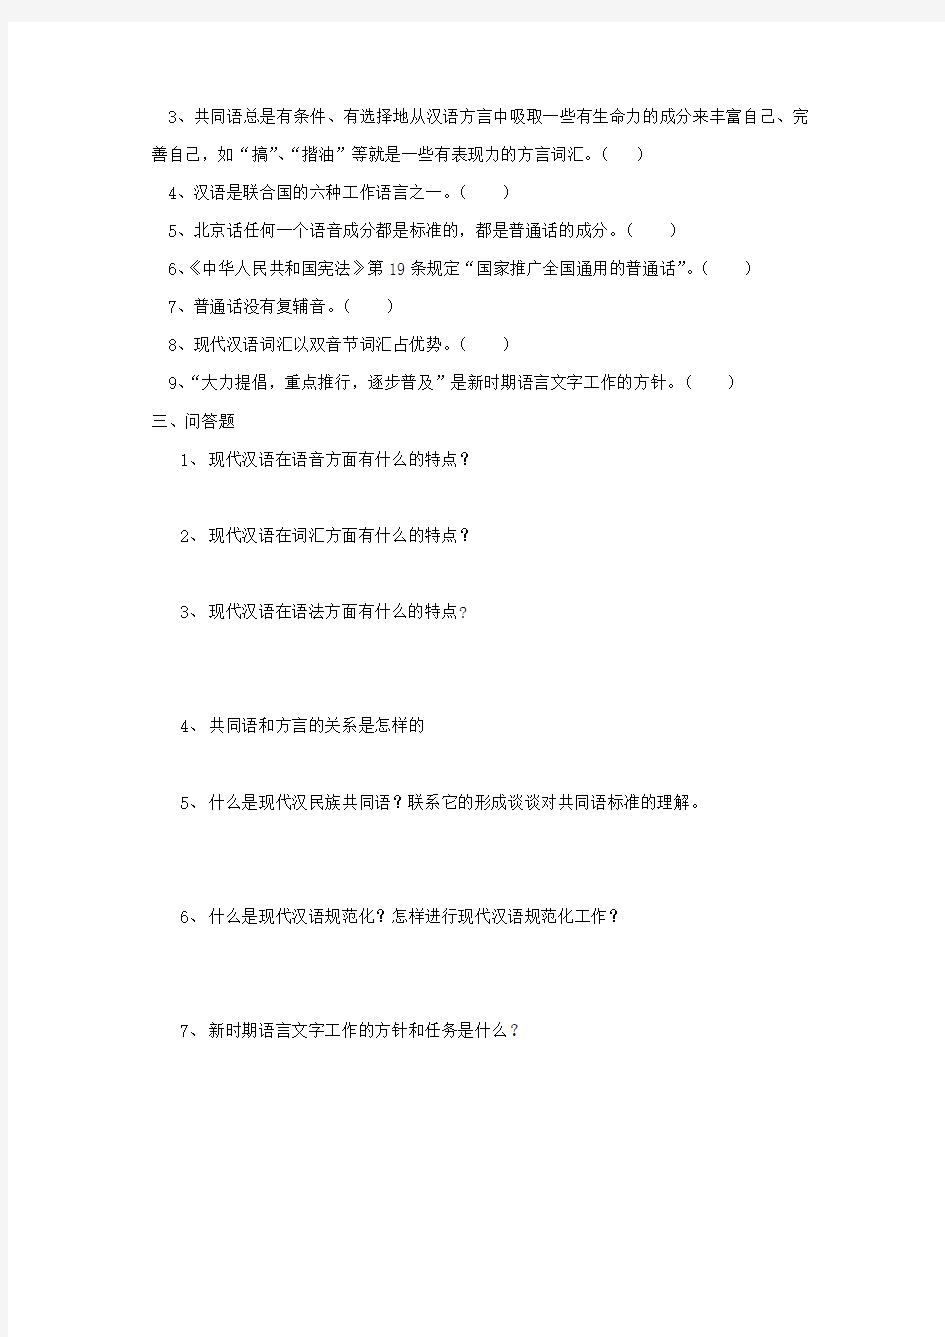 现代汉语考卷绪论部分